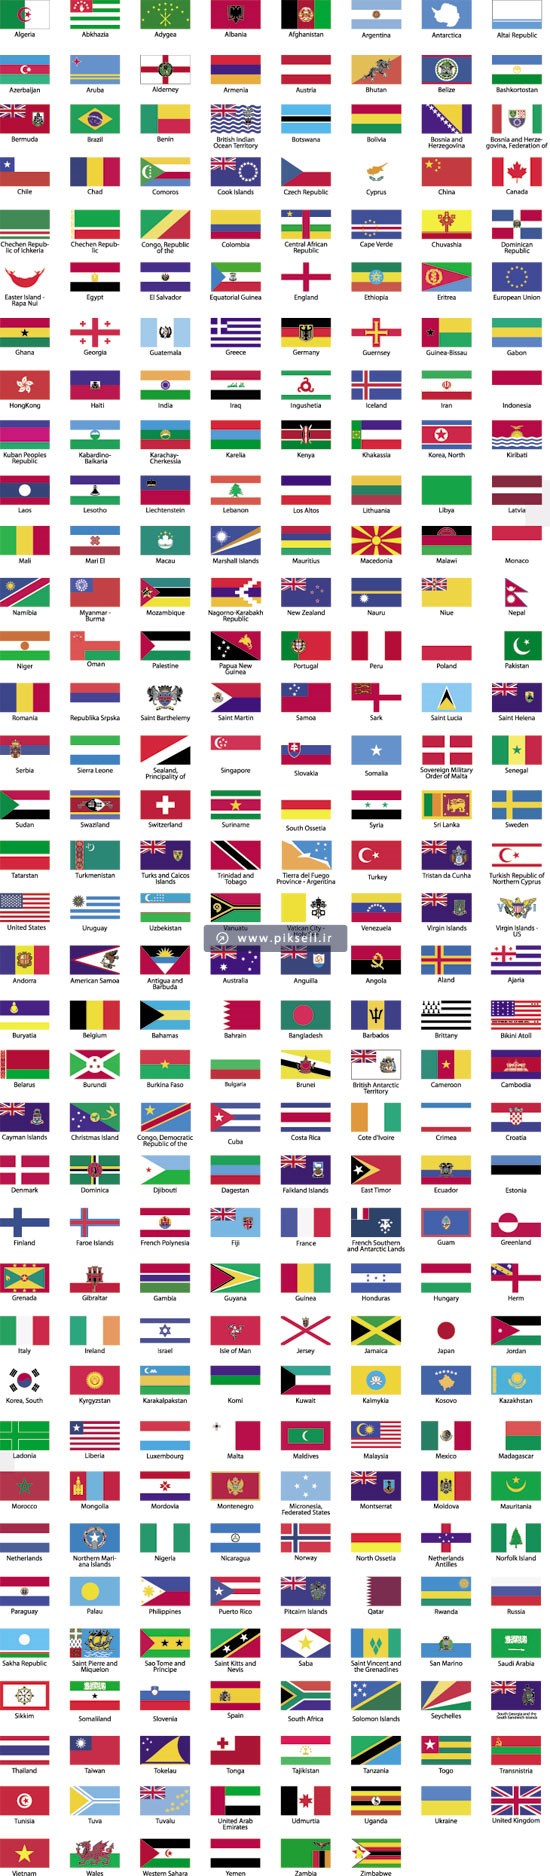 عکس پرچم کشور های مختلف